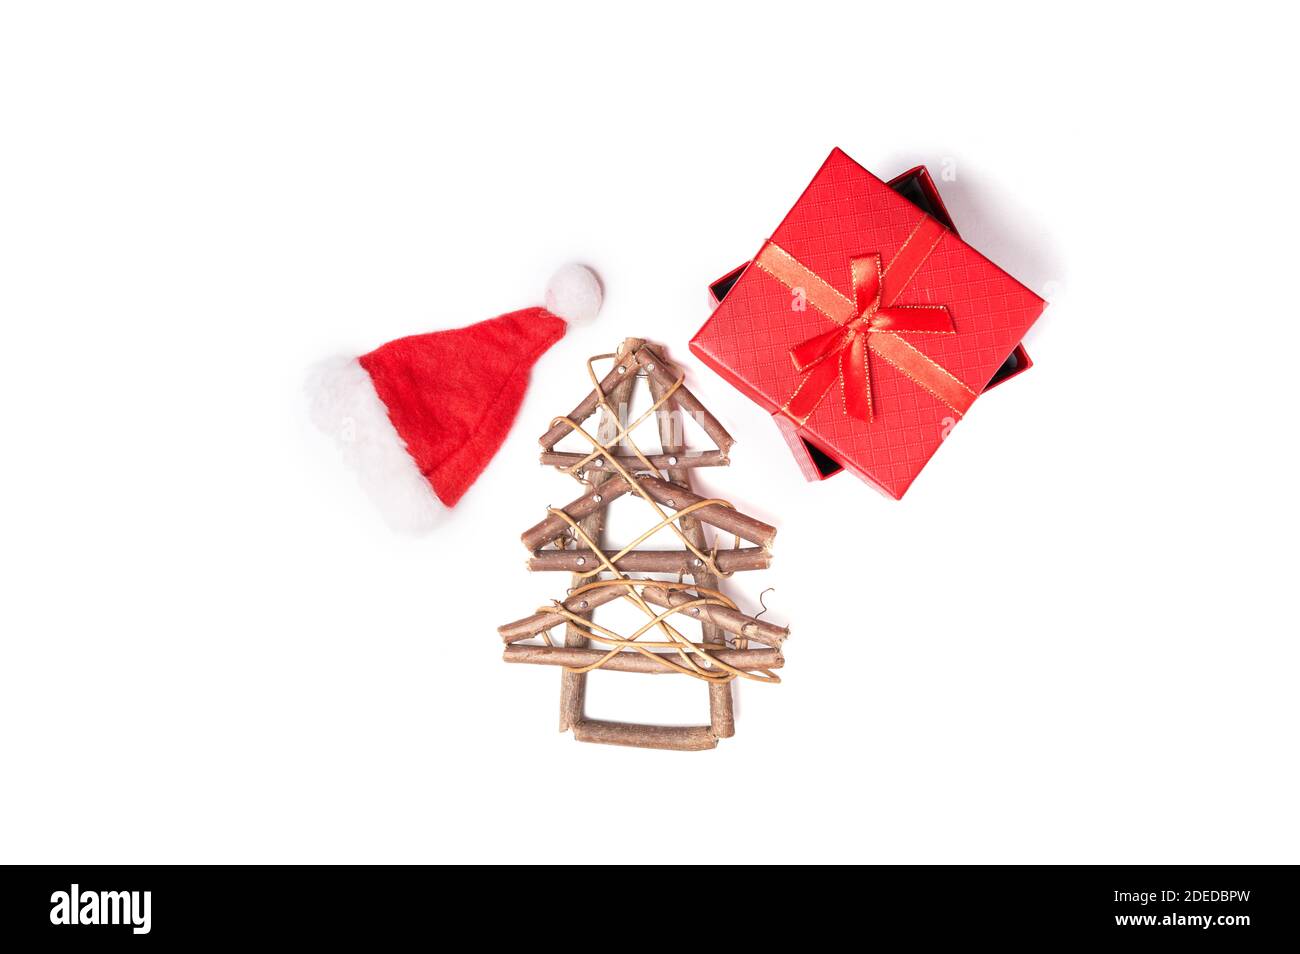 Sapin de Noël en bois, chapeau de Noël et cadeau rouge sur fond blanc isolé avec espace de copie Banque D'Images